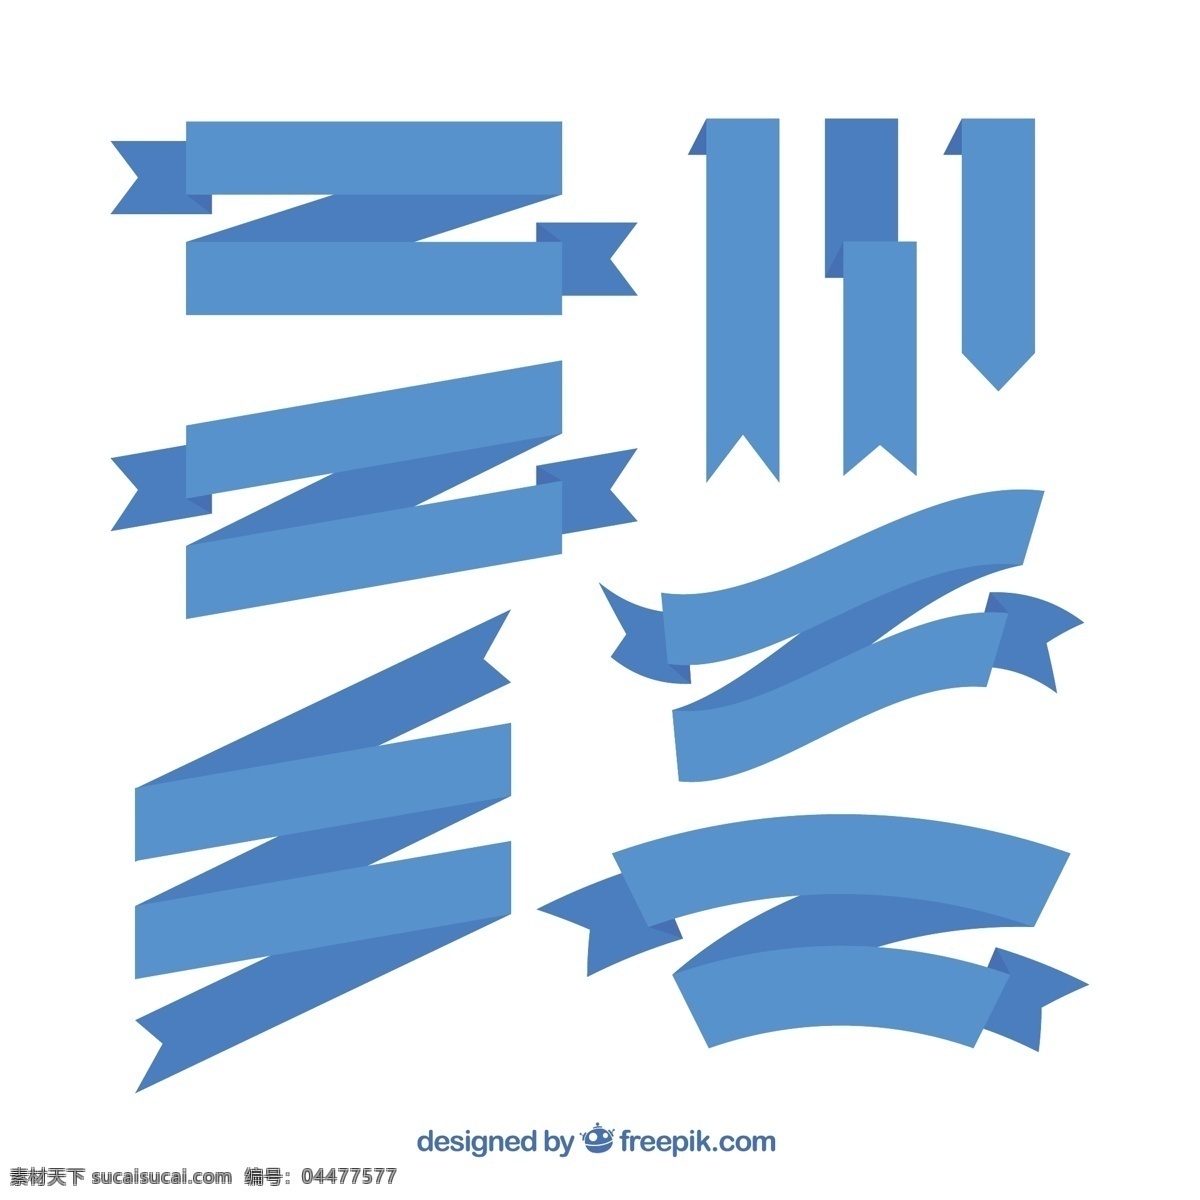 平面设计 中 蓝 丝带 品种 旗帜 蓝色 横幅 颜色 平面 装饰 丝带横幅 分类